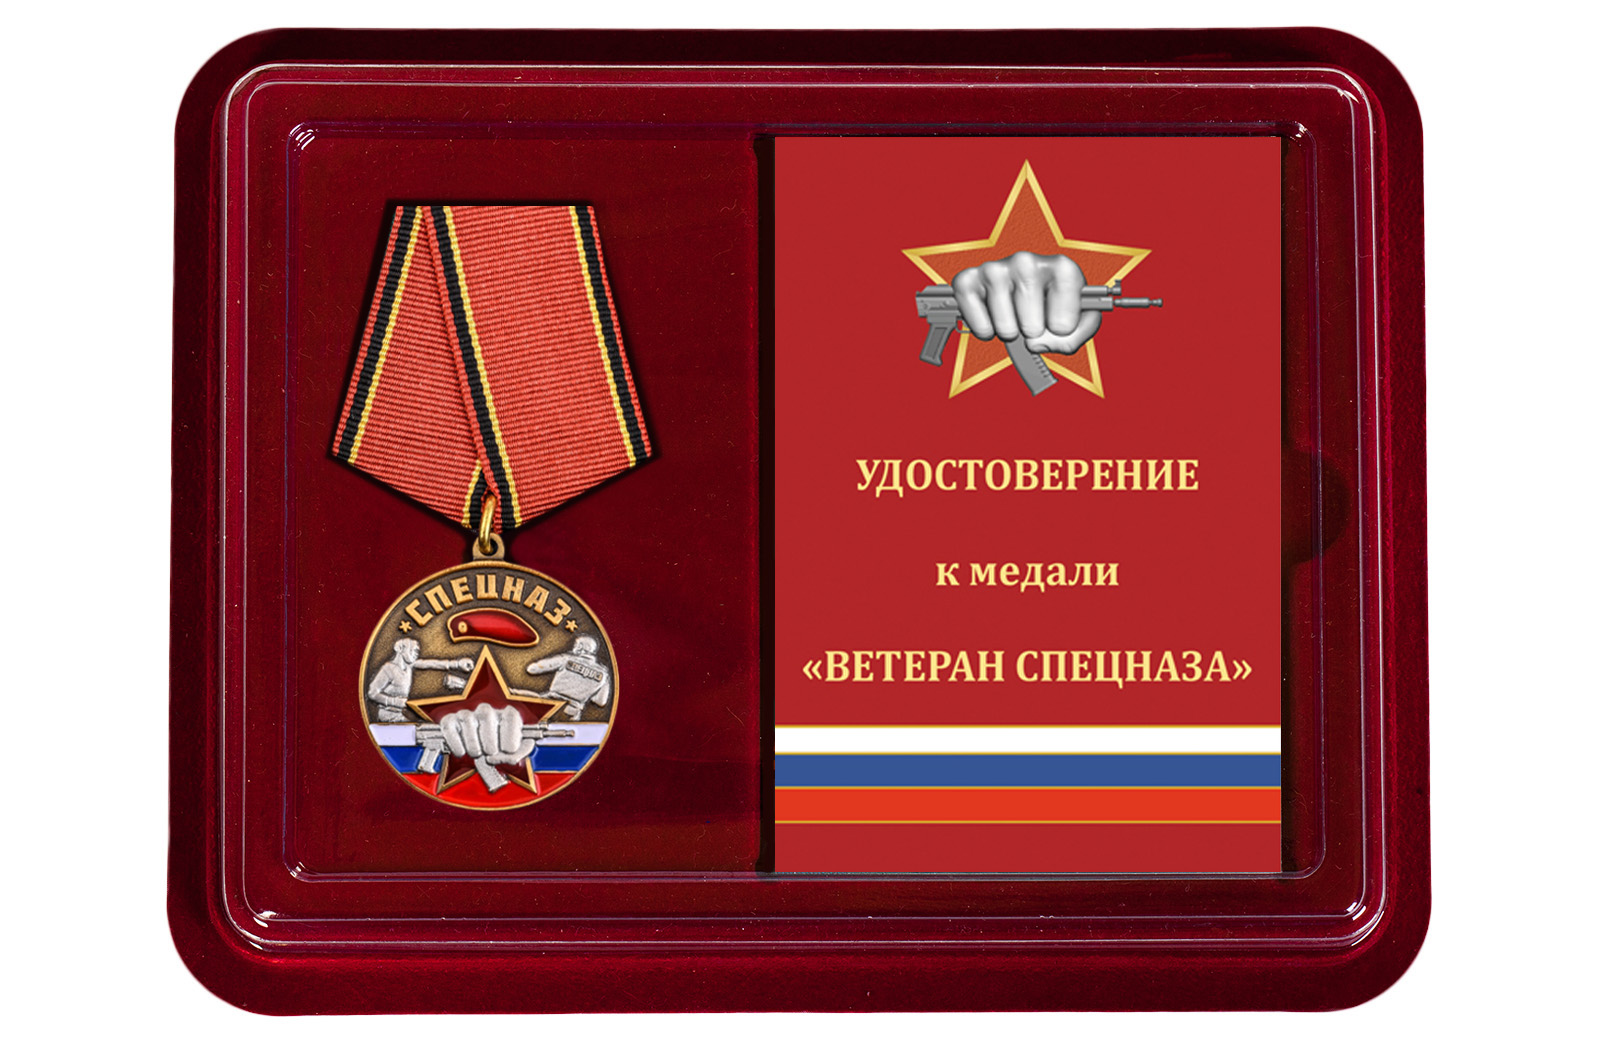 Купить медаль Спецназ Ветеран в футляре с удостоверением выгодно онлайн